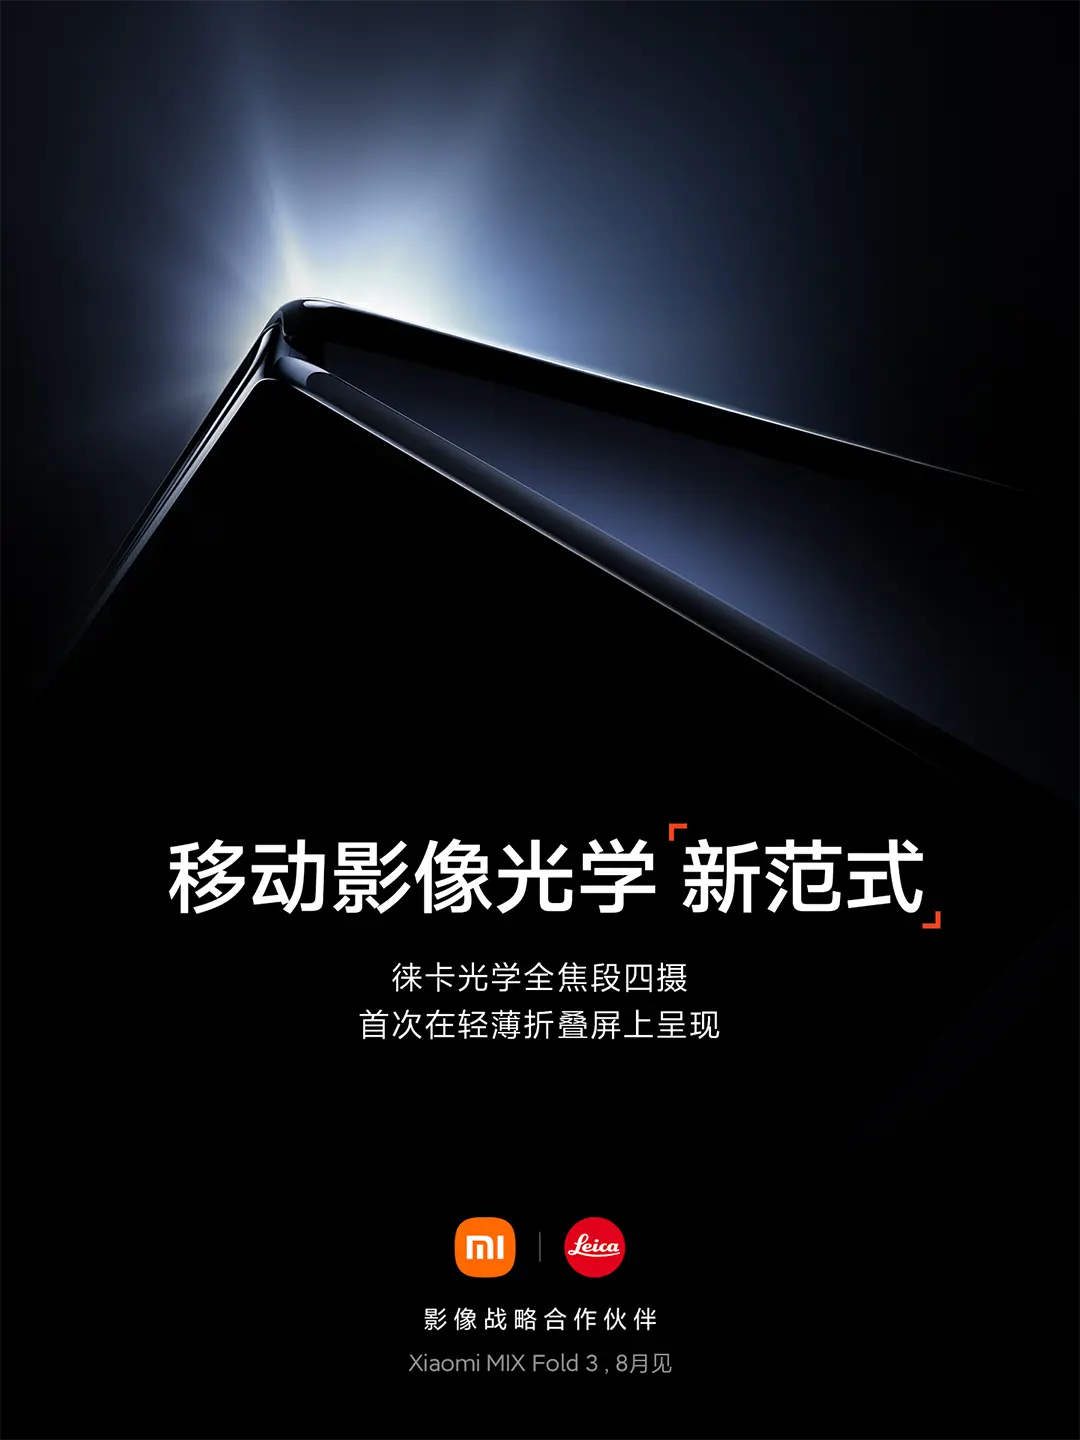 A Xiaomi már nézőket toboroz a Xiaomi Mix Fold 3 bemutatójára